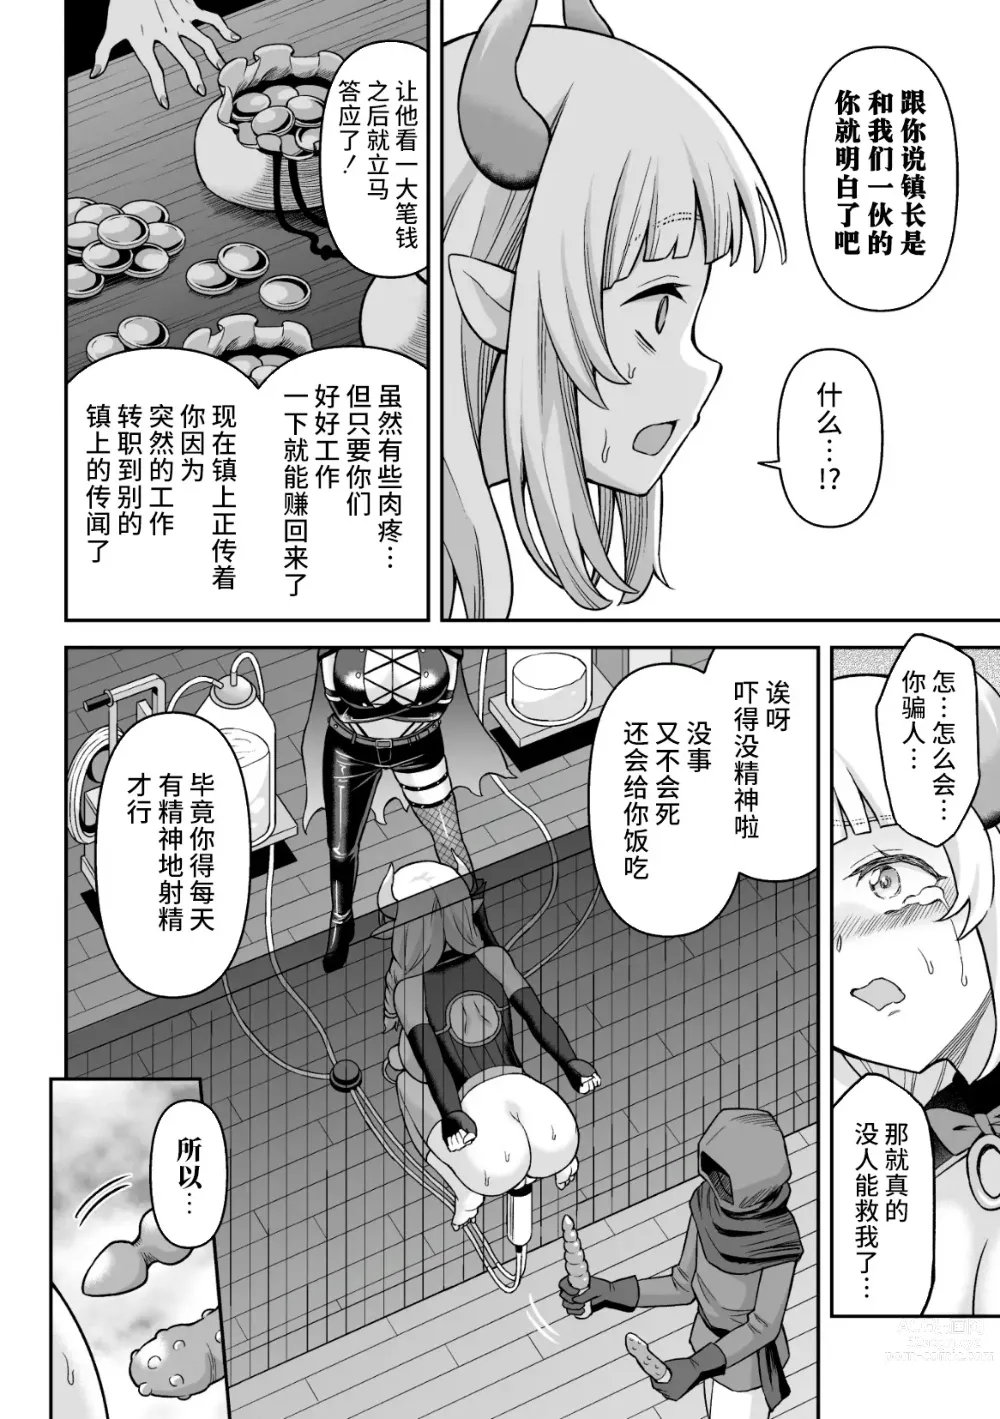 Page 16 of manga Ushi Musume no Kyousei Oschinpo Milk